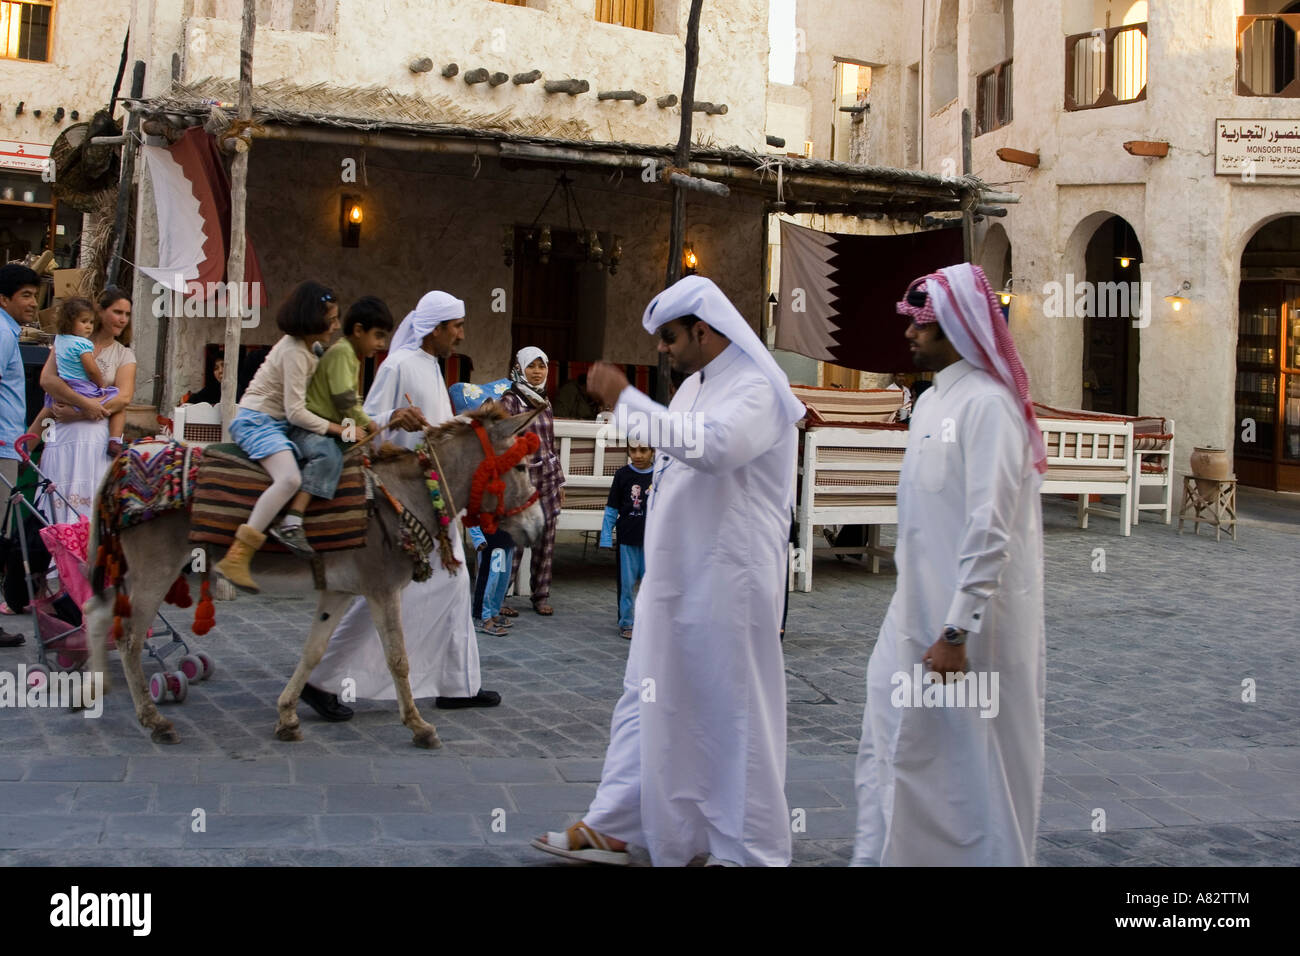 Qatar Doha Souk children on donkey Stock Photo